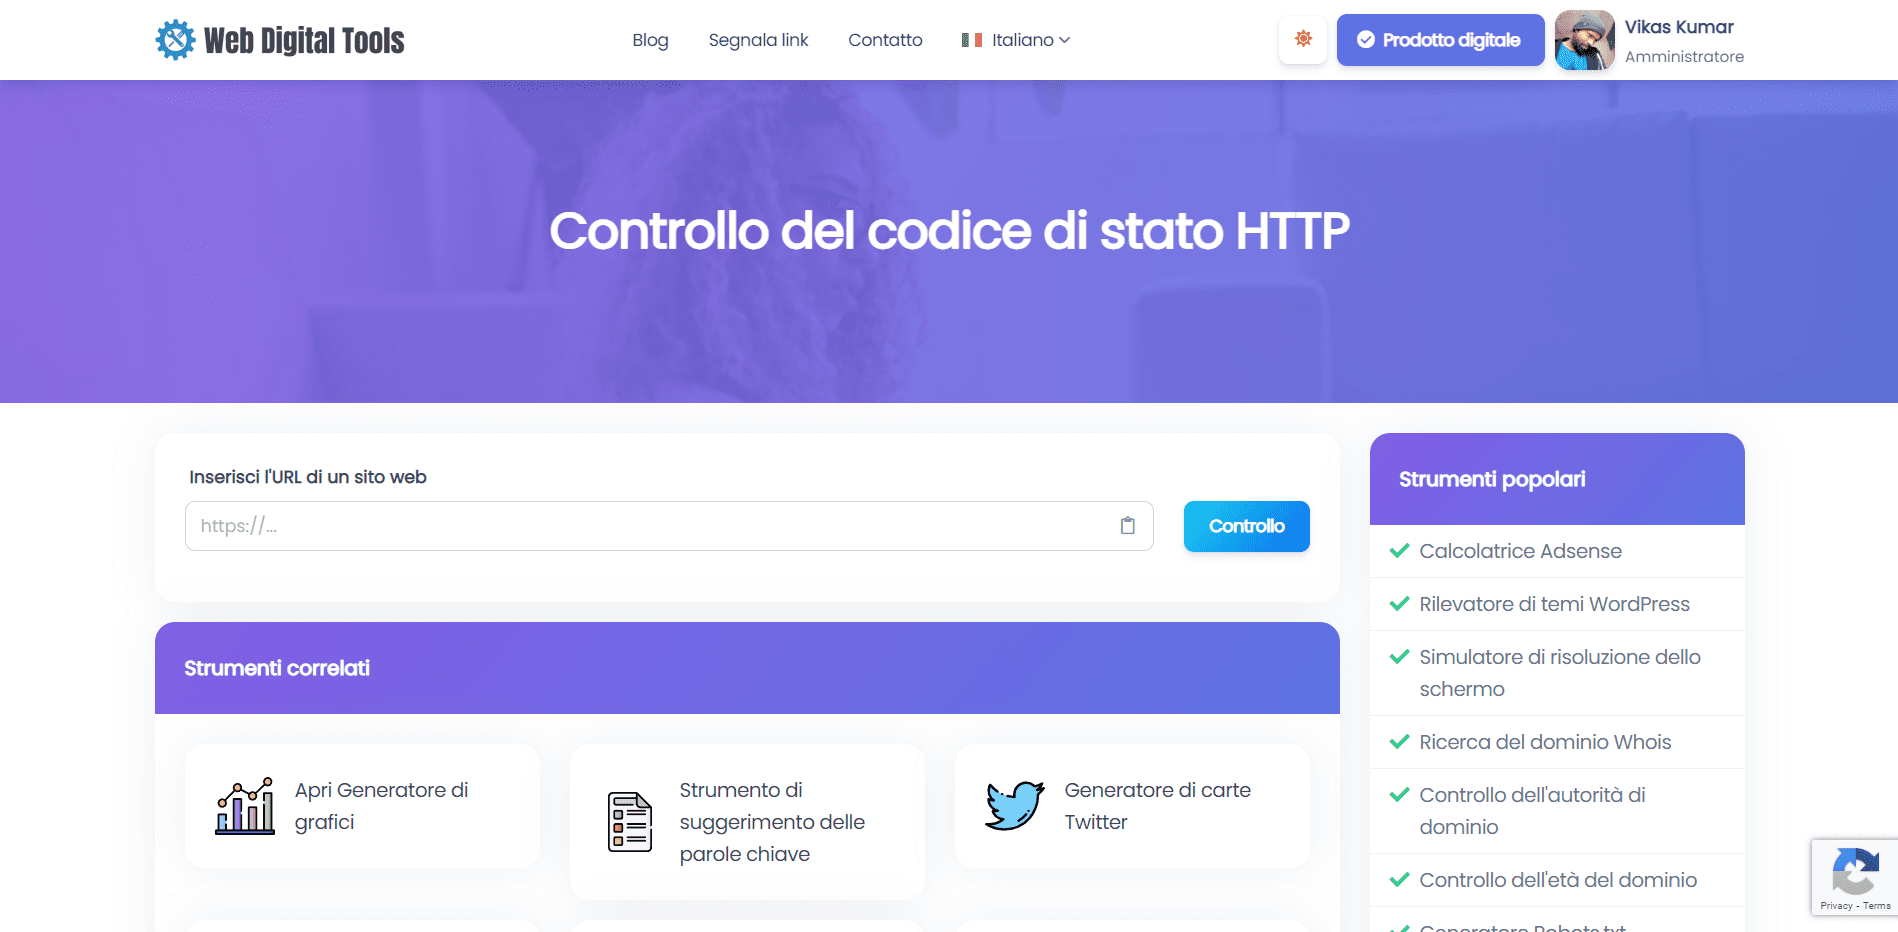 Controllo del codice di stato HTTP